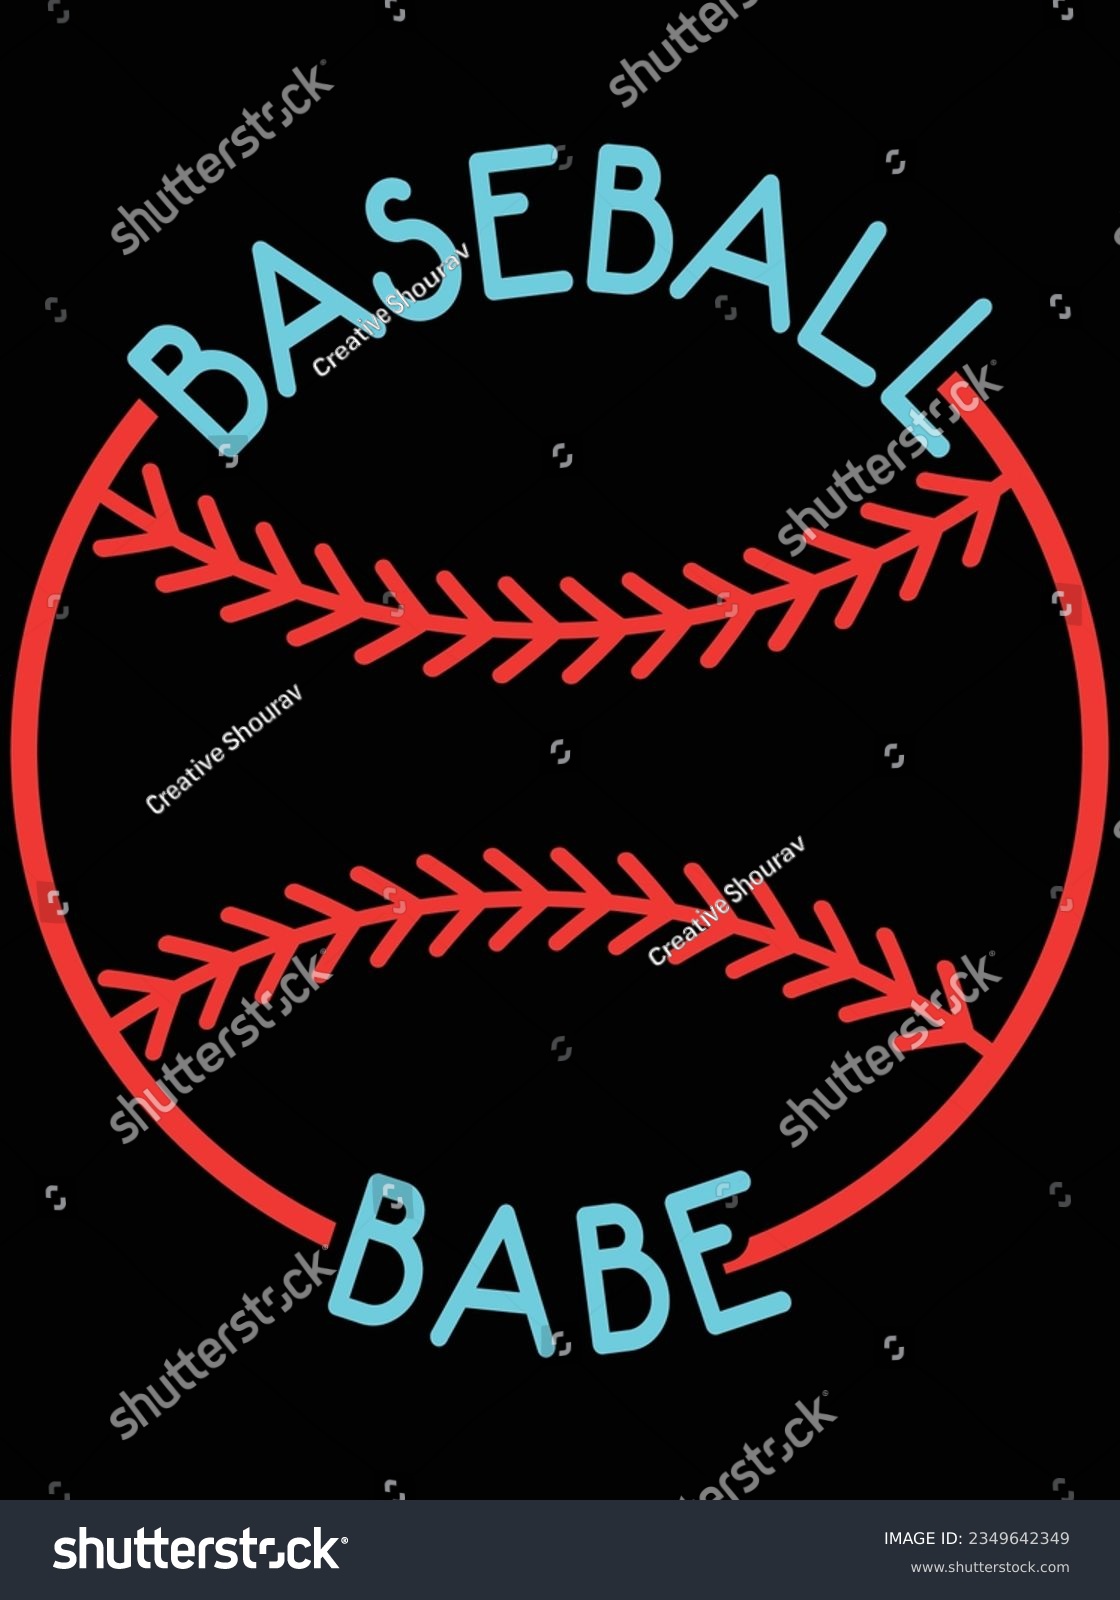 SVG of Baseball babe vector art design, eps file. design file for t-shirt. SVG, EPS cuttable design file svg